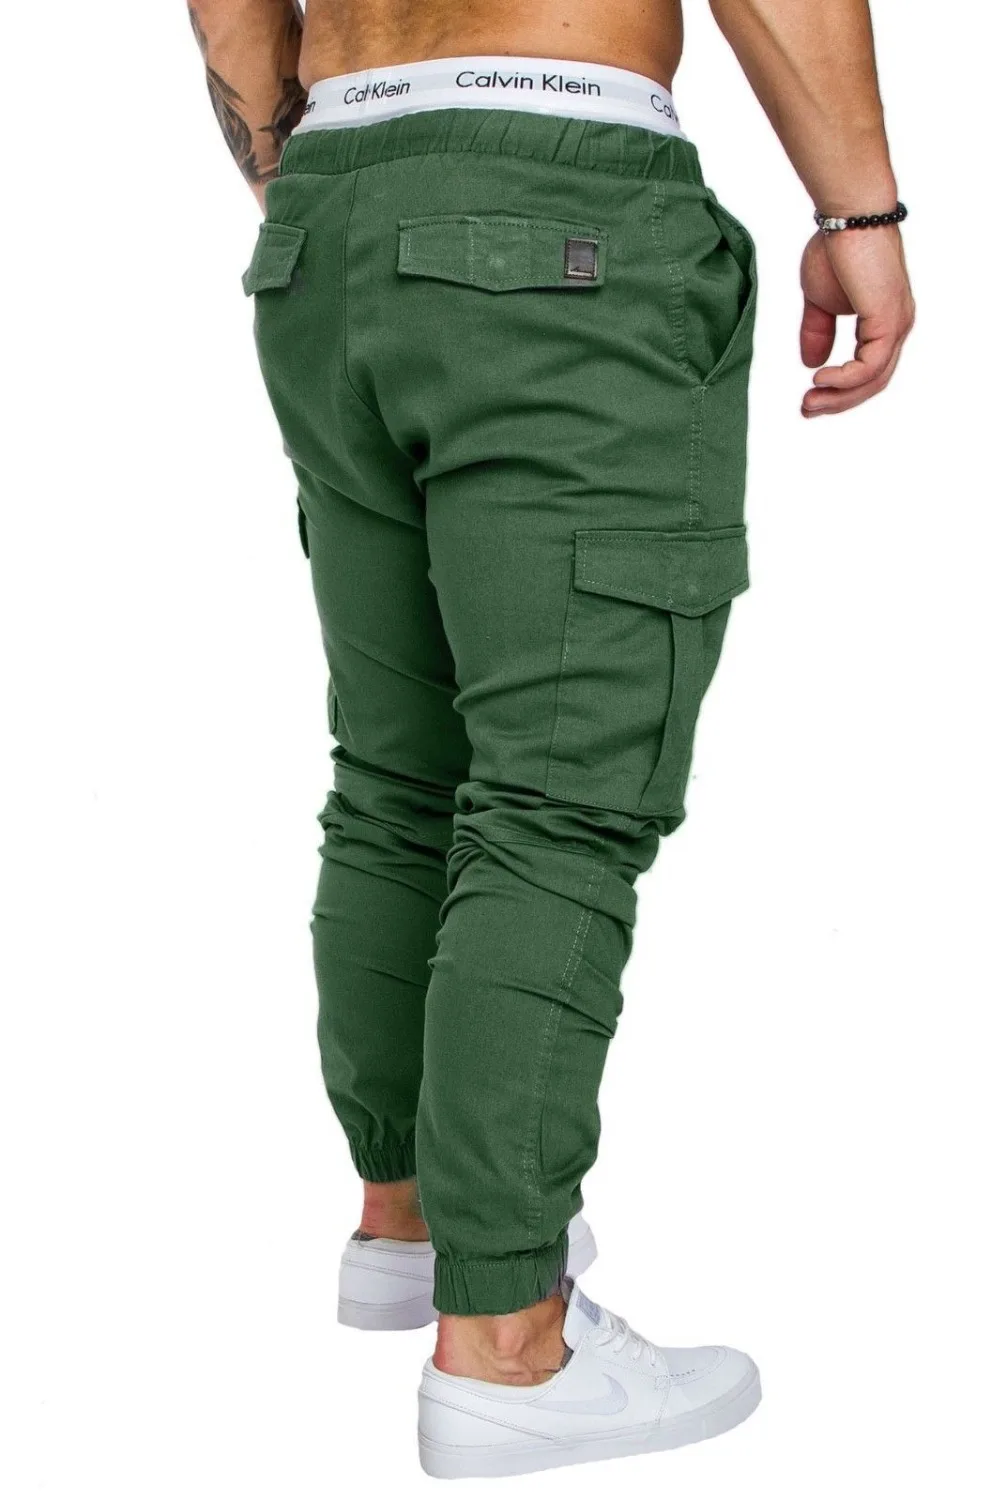 PADEGAO мужская сыпучие перекрестные брюки Хип-Хоп Гарем Бегунов Брюки уличный стиль jogger брюки карандаш карман эластичный пояс мужские